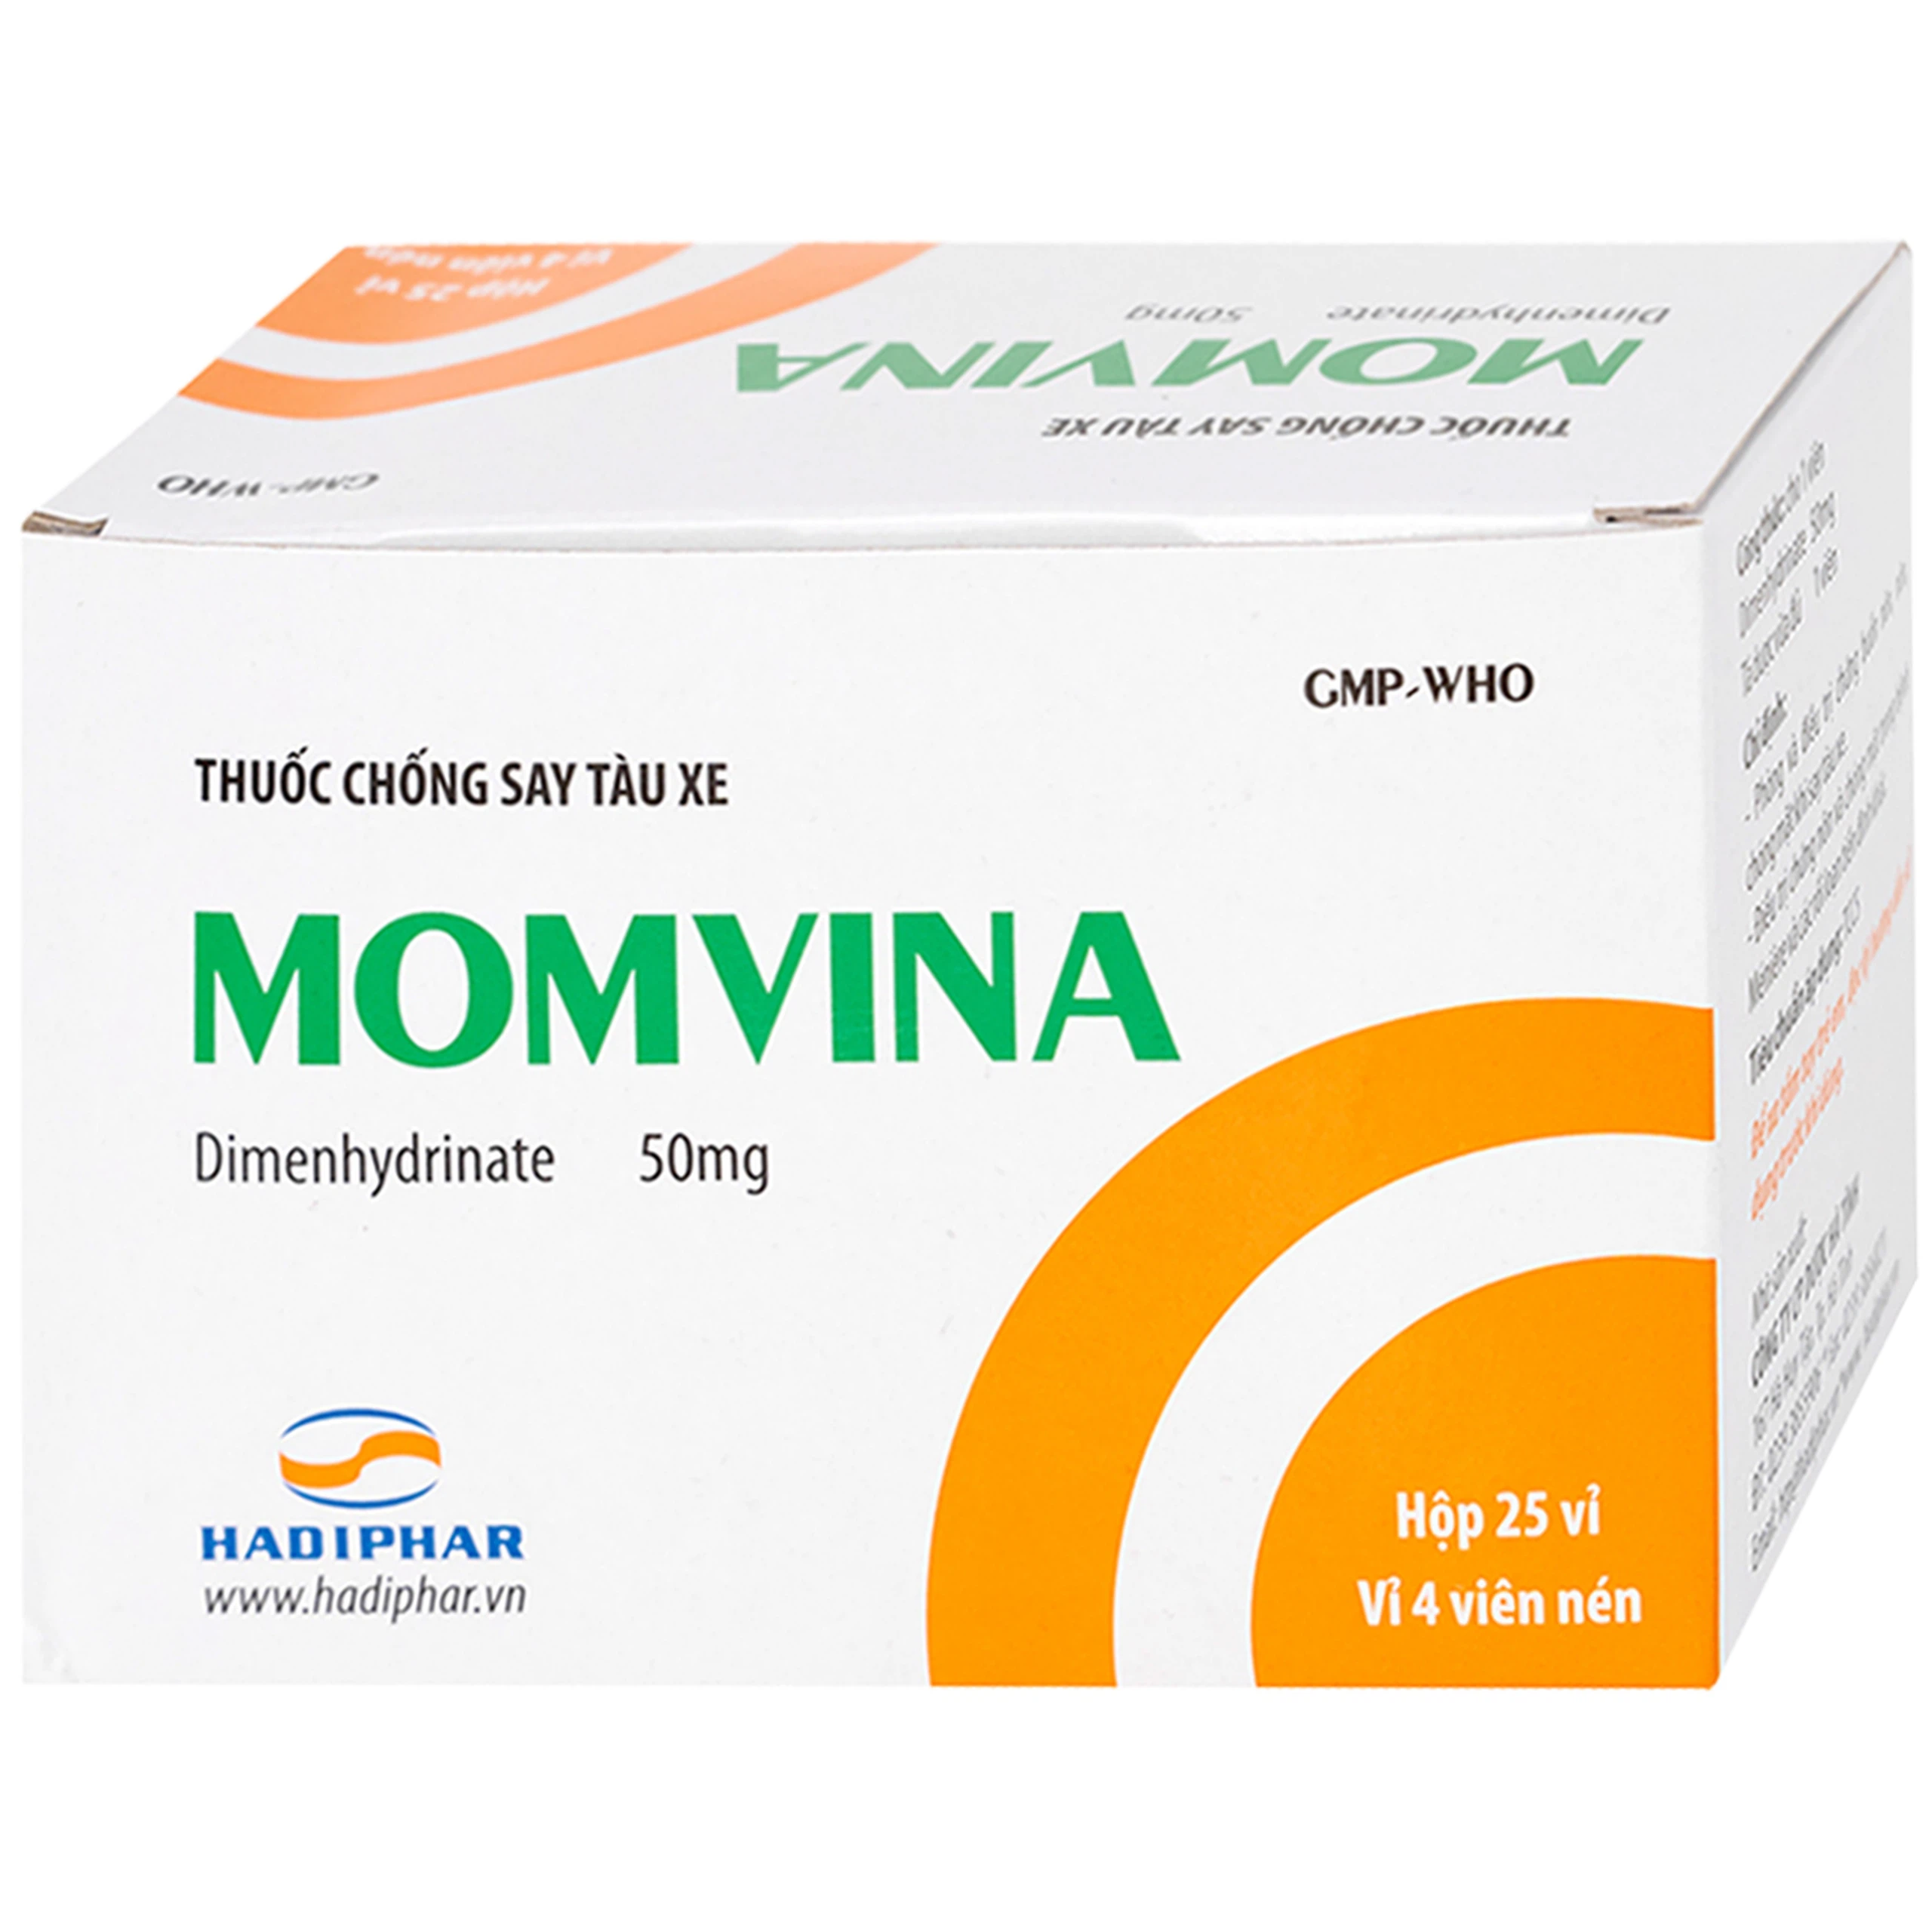 Thuốc chống say tàu xe Momvina Hadiphar điều trị chứng buồn nôn, nôn, chóng mặt (25 vỉ x 4 viên)